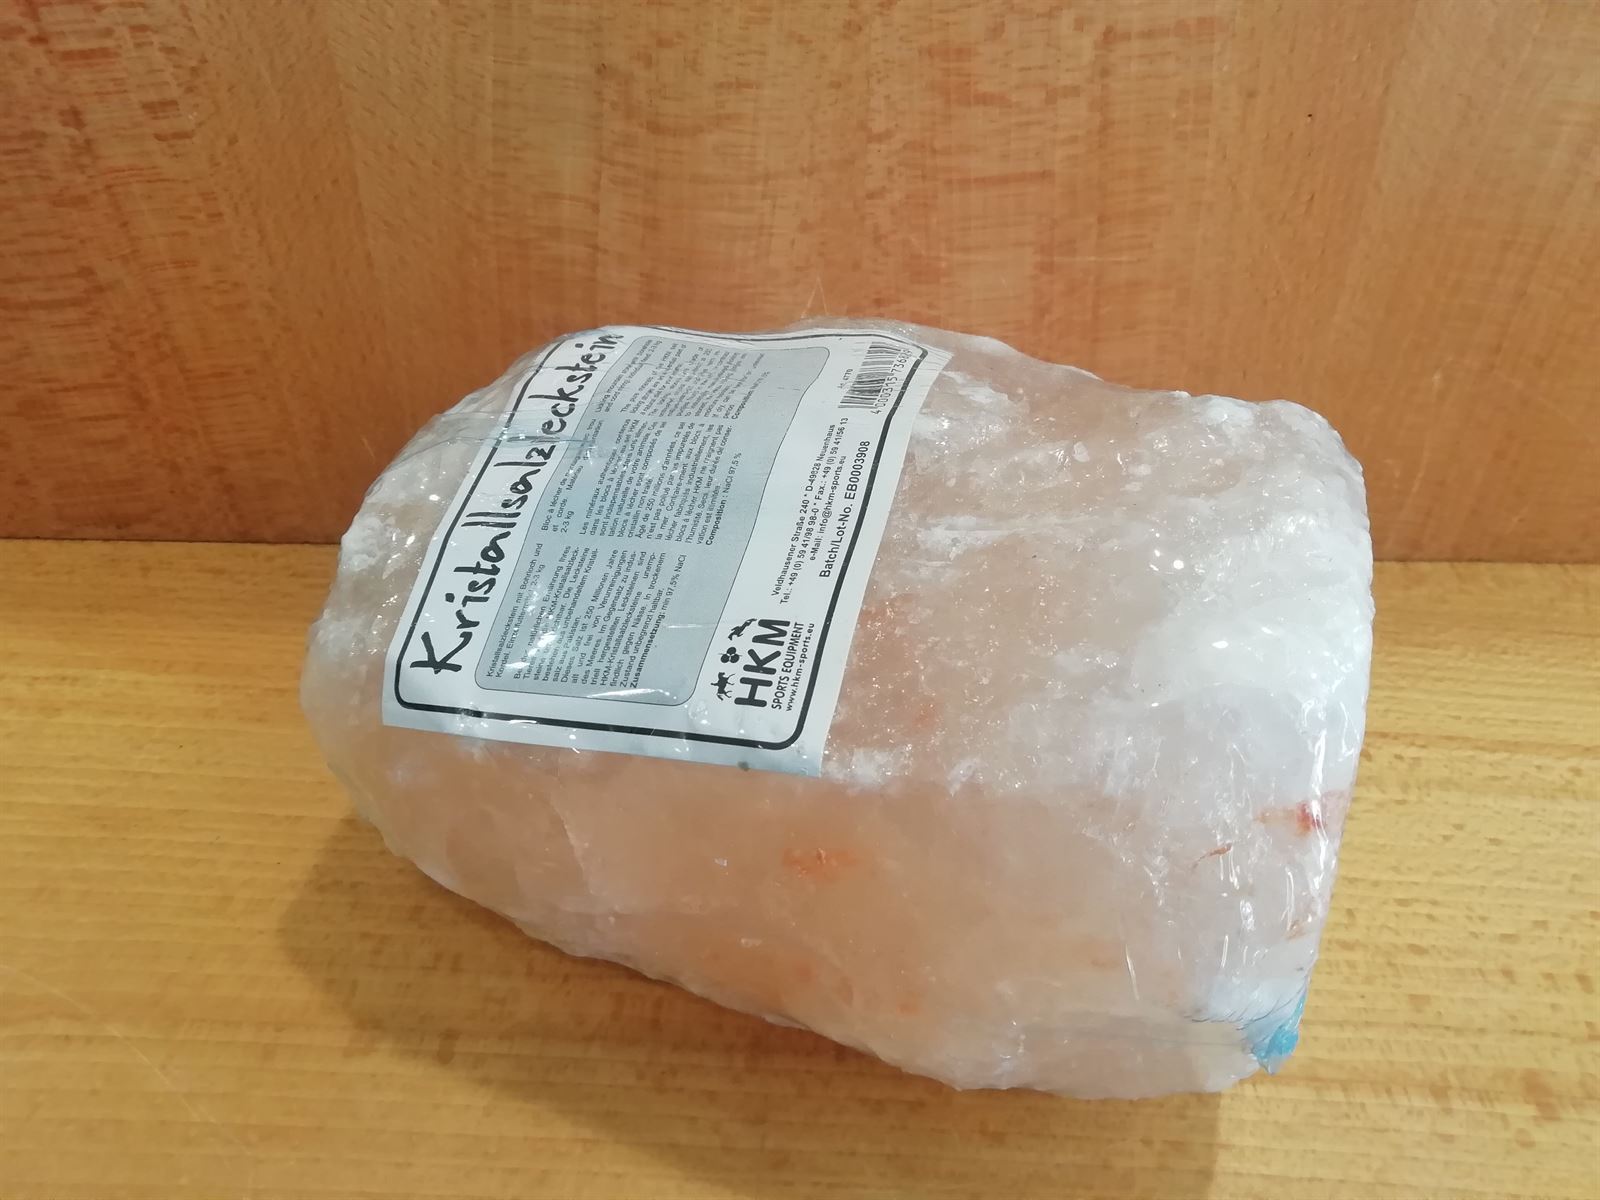 Piedra de sal HKM, 2 kg - Imagen 1